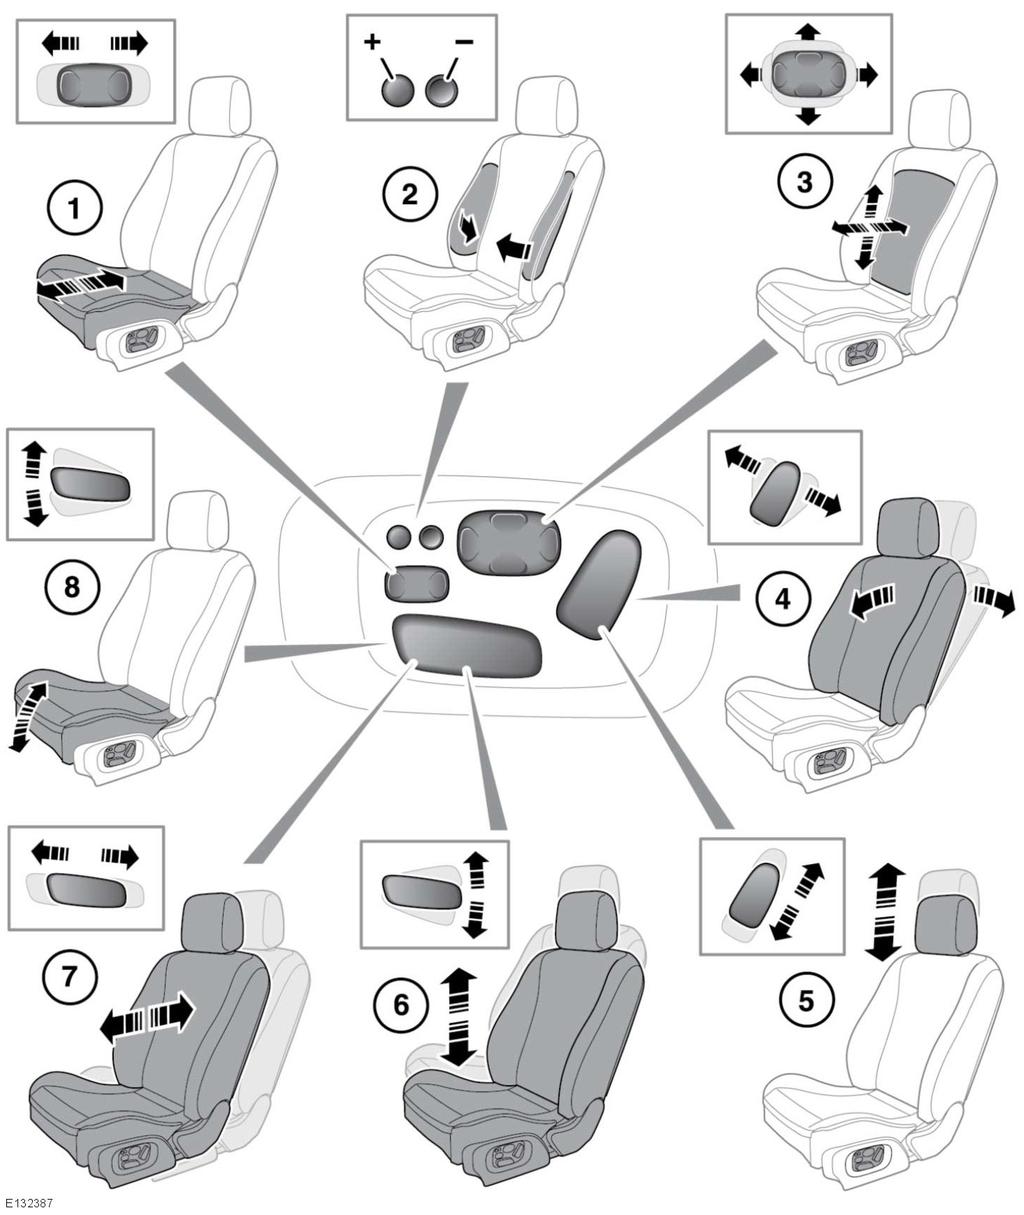 Μπροστινά καθίσματα Μπροστινά ΗΛΕΚΤΡΙΚΑ καθίσματα ΚΑΘΙΣΜΑΤΑ Δεν πρέπει να ρυθμίζετε το κάθισμα όταν το όχημα κινείται.